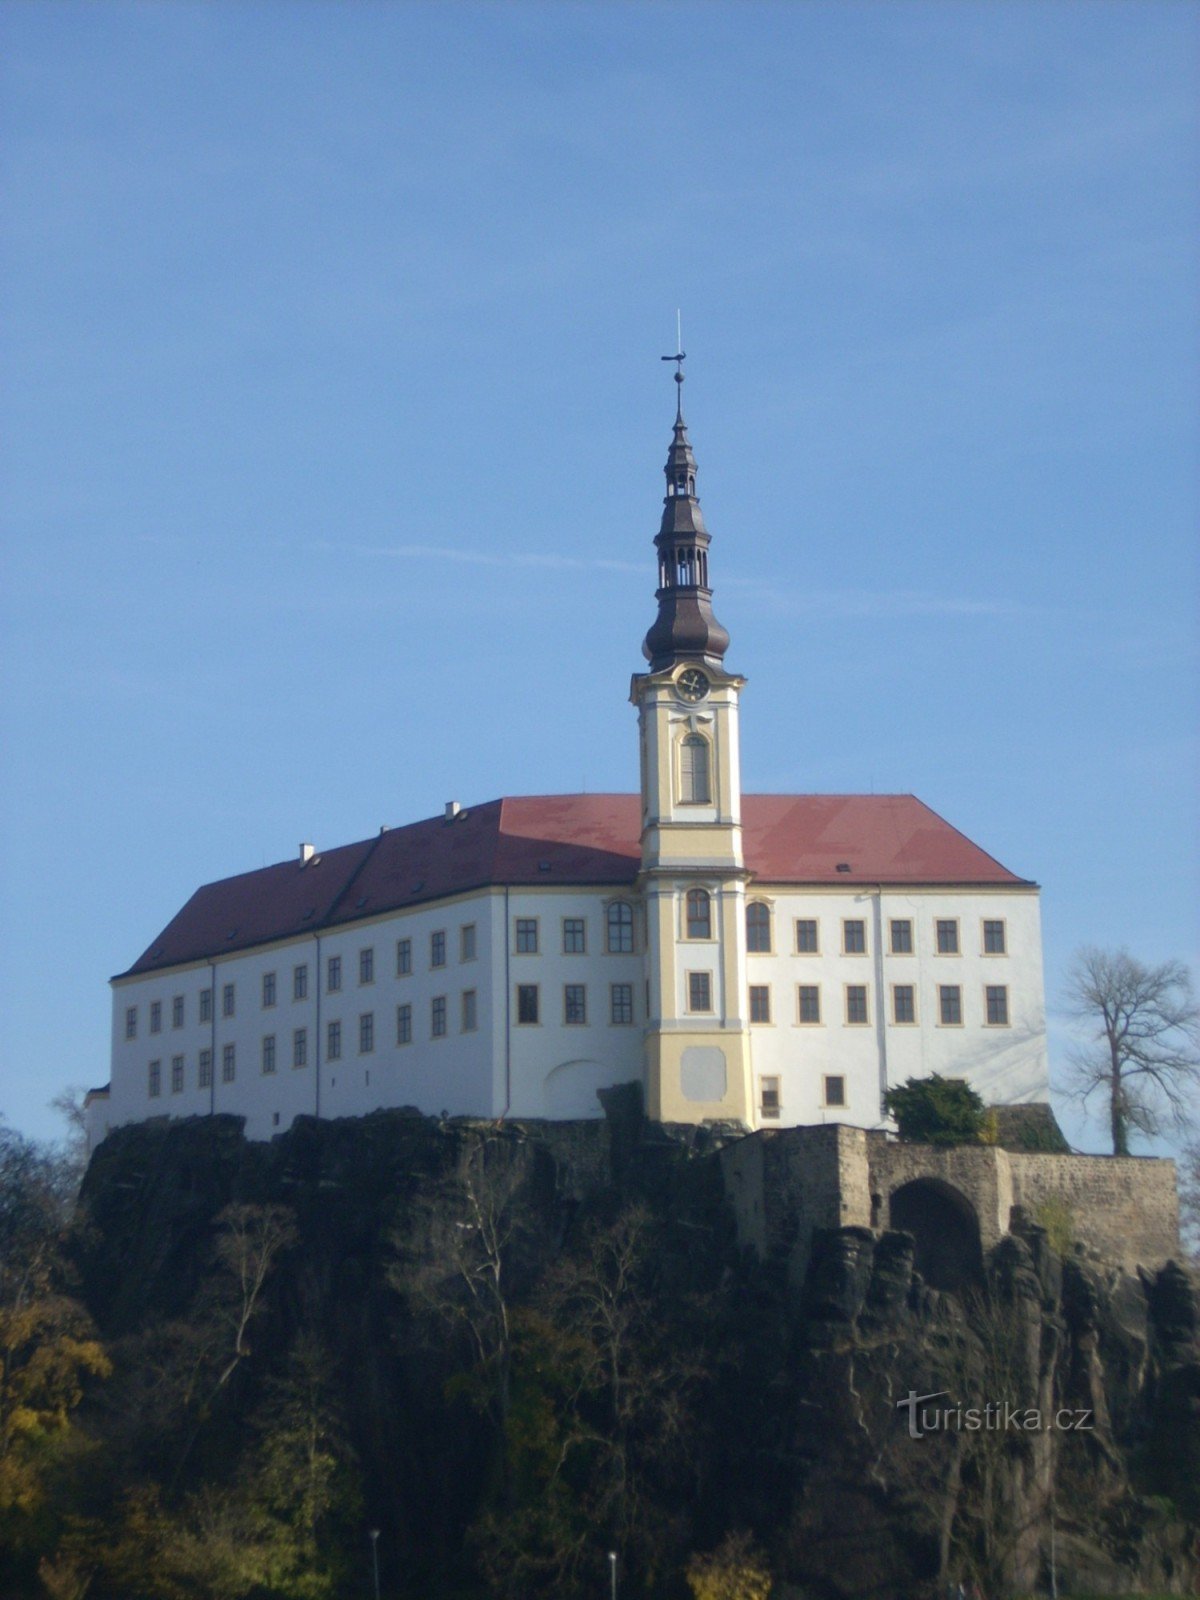 Vedere la castelul Děčín de pe zidul ciobanului